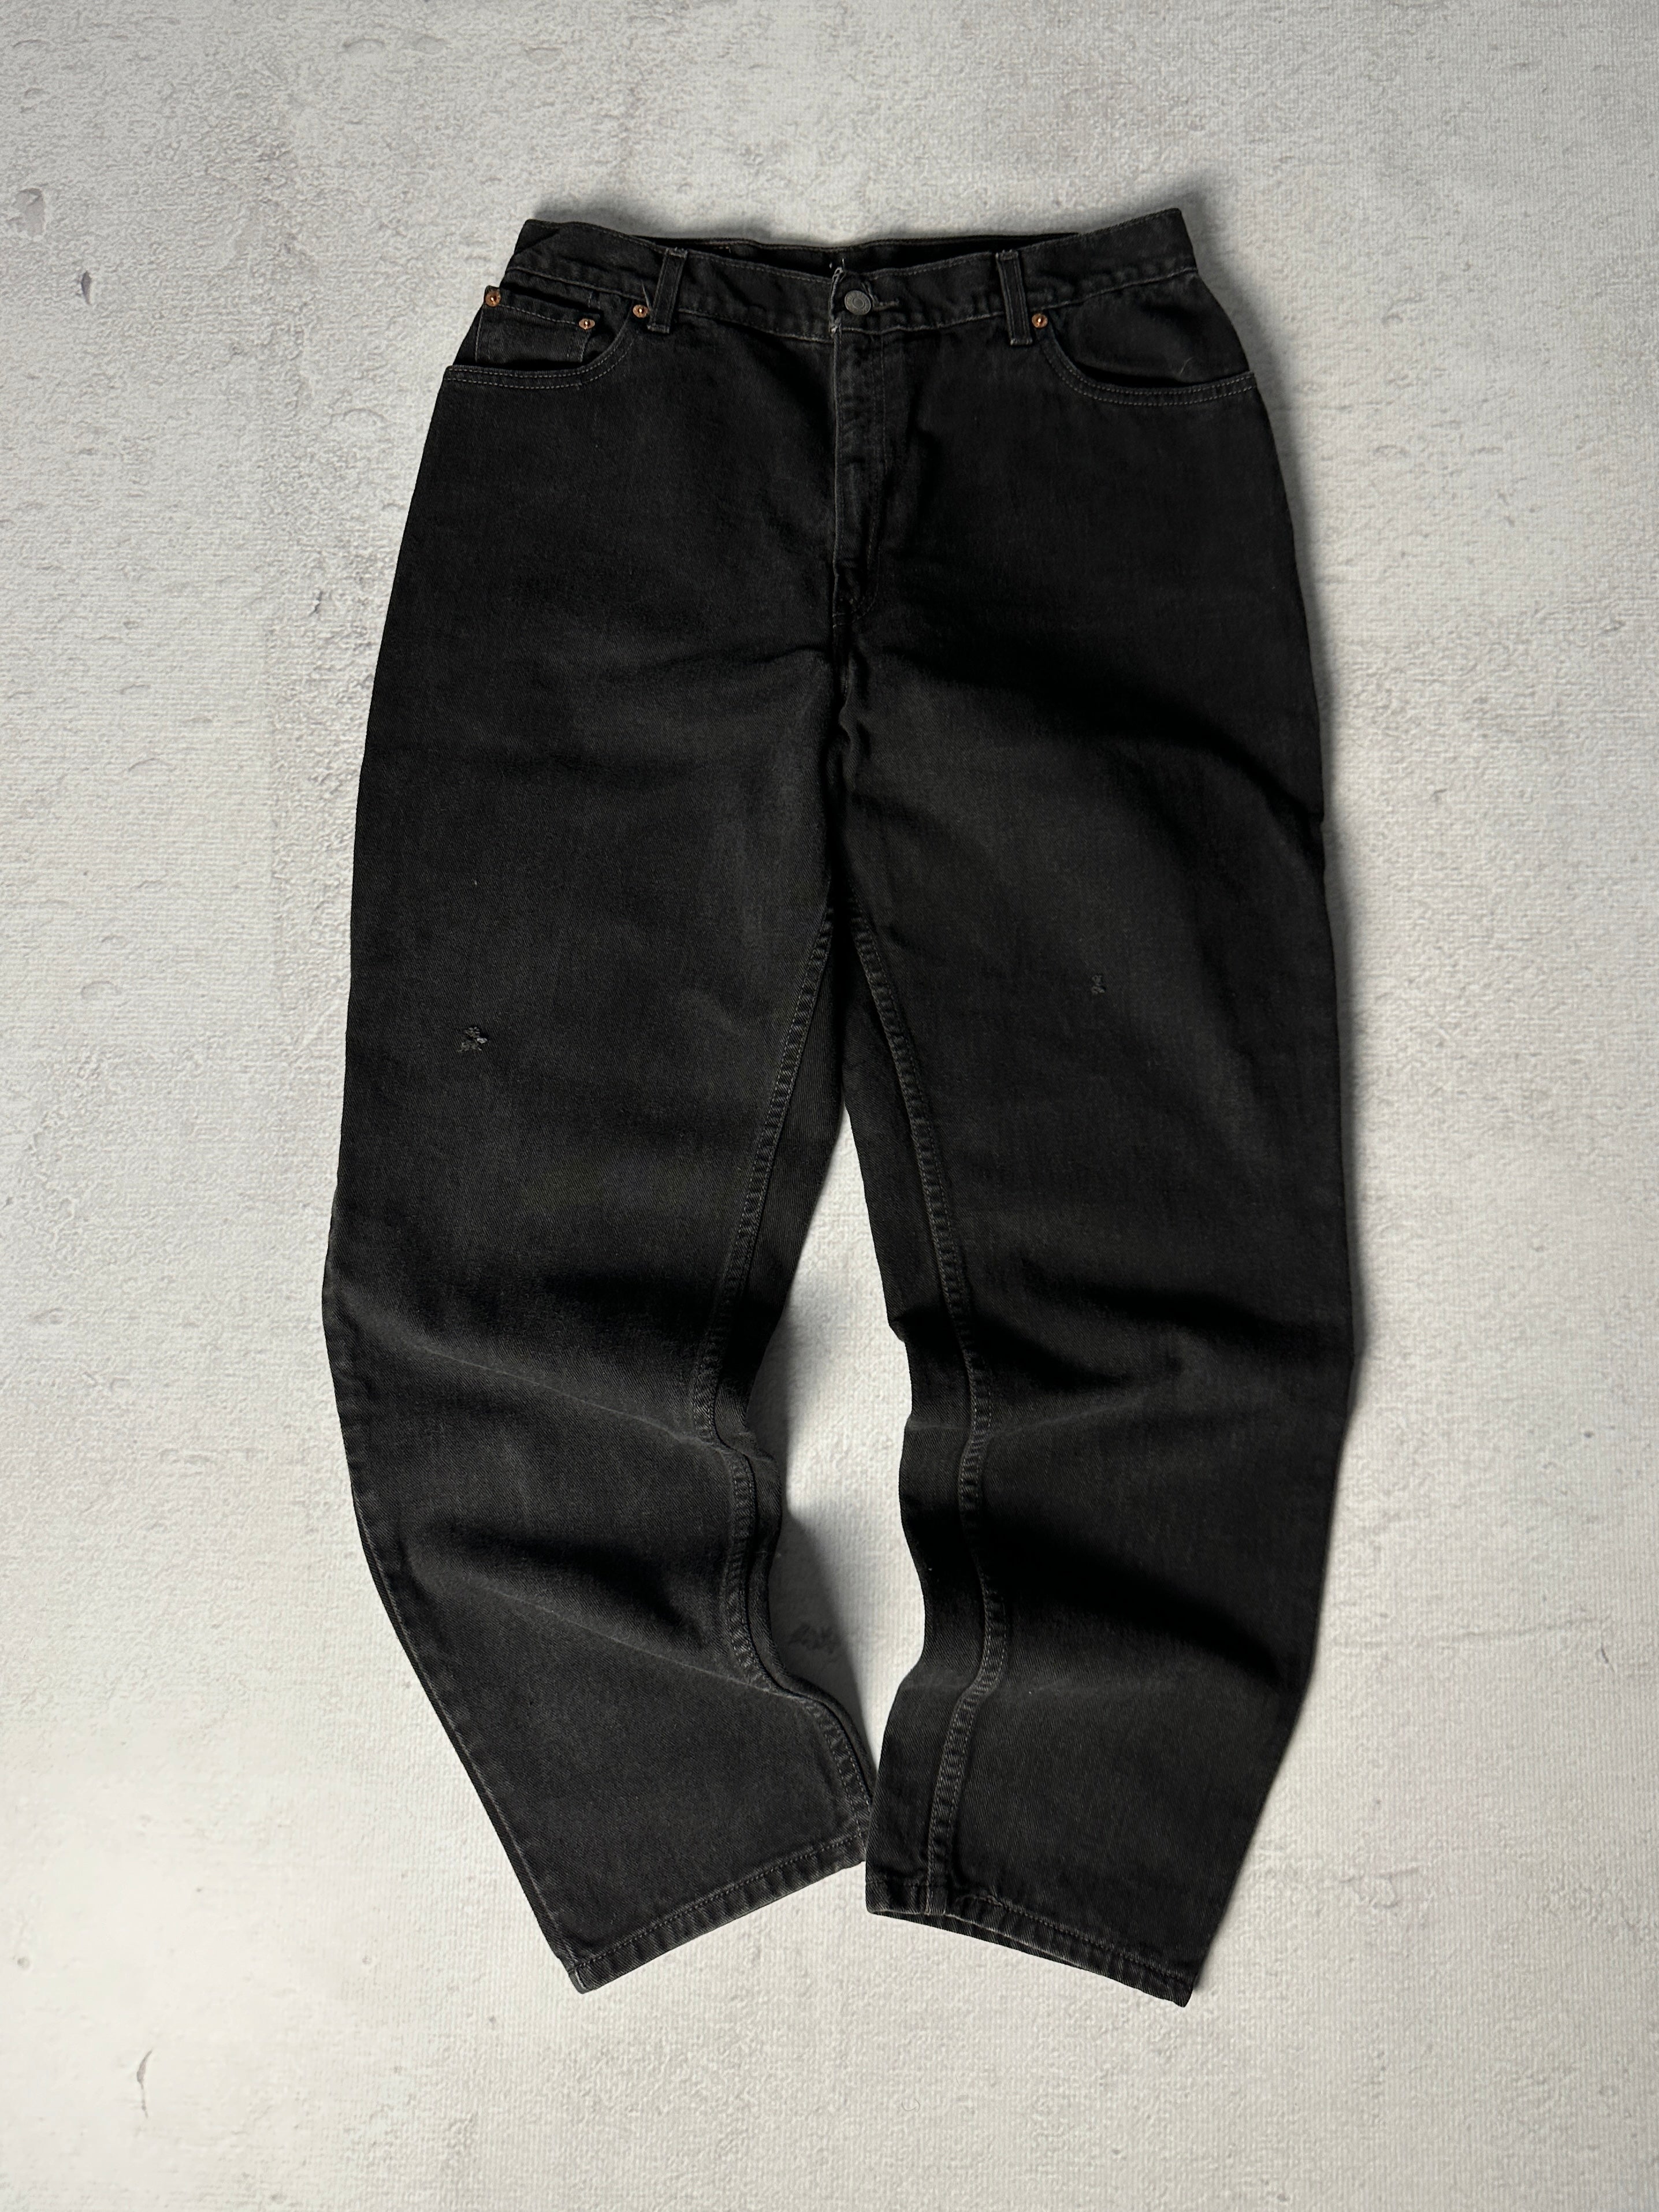 Vintage Levis 550 Jeans - Women's 34W30L